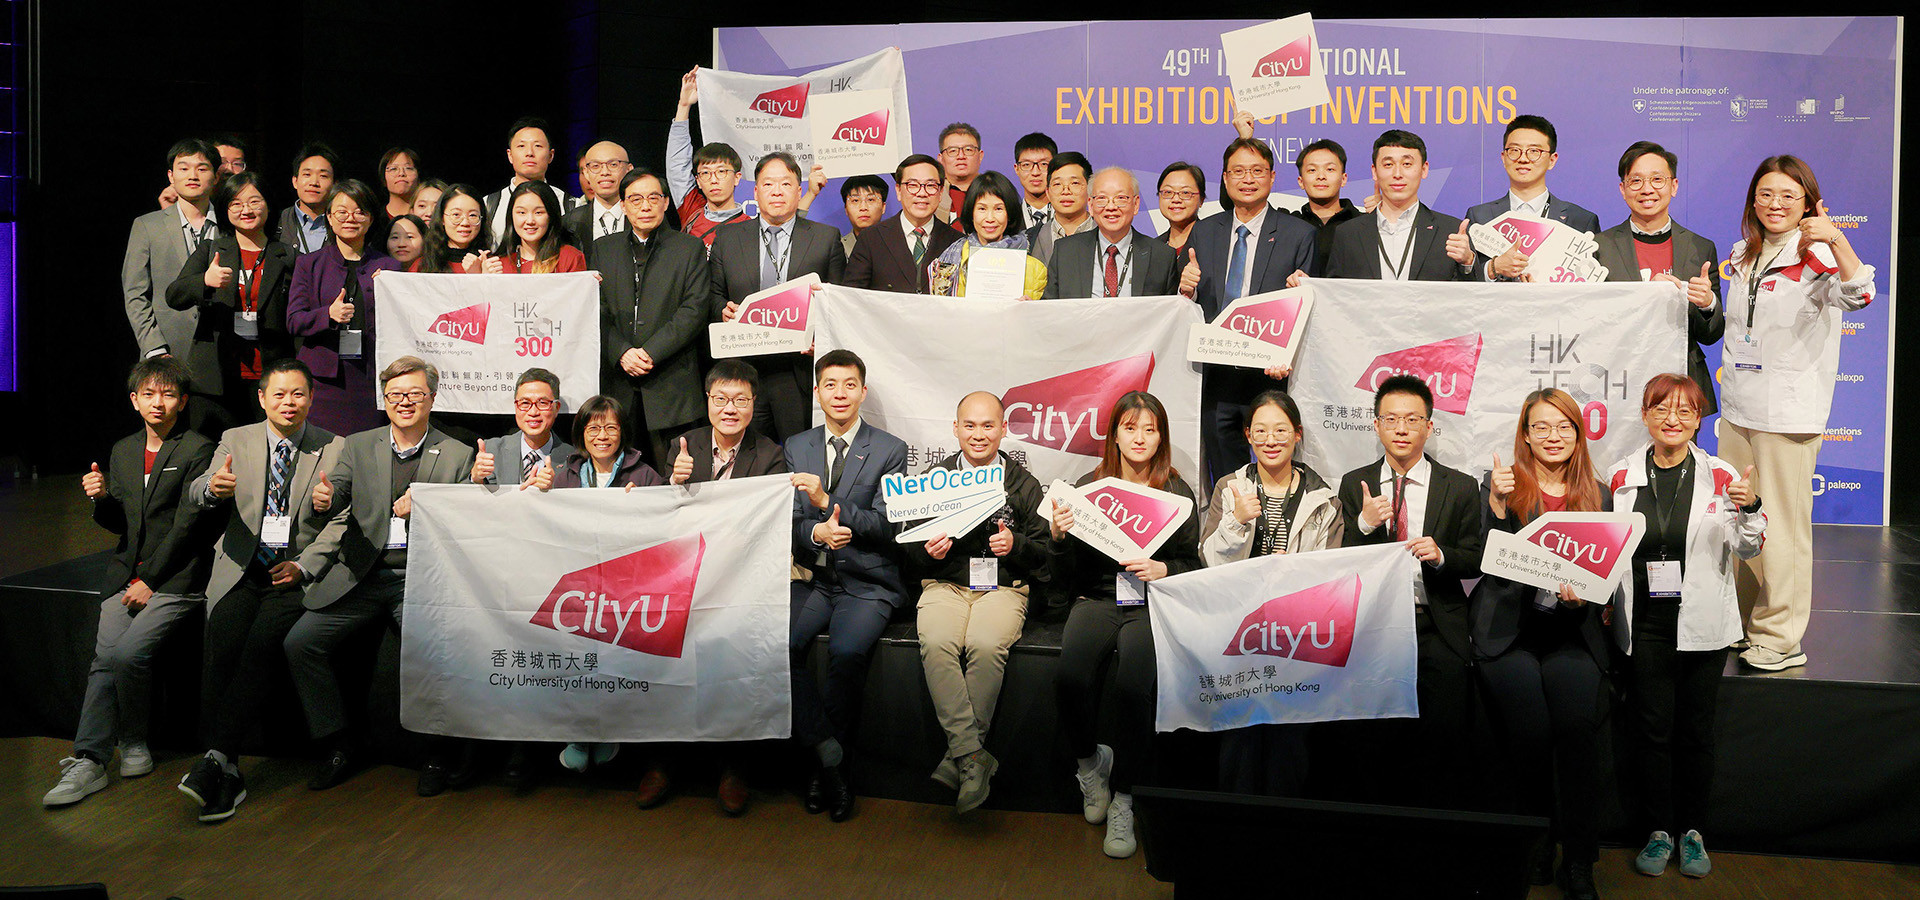 CityUHK triumphs at IEIG with 35 awards